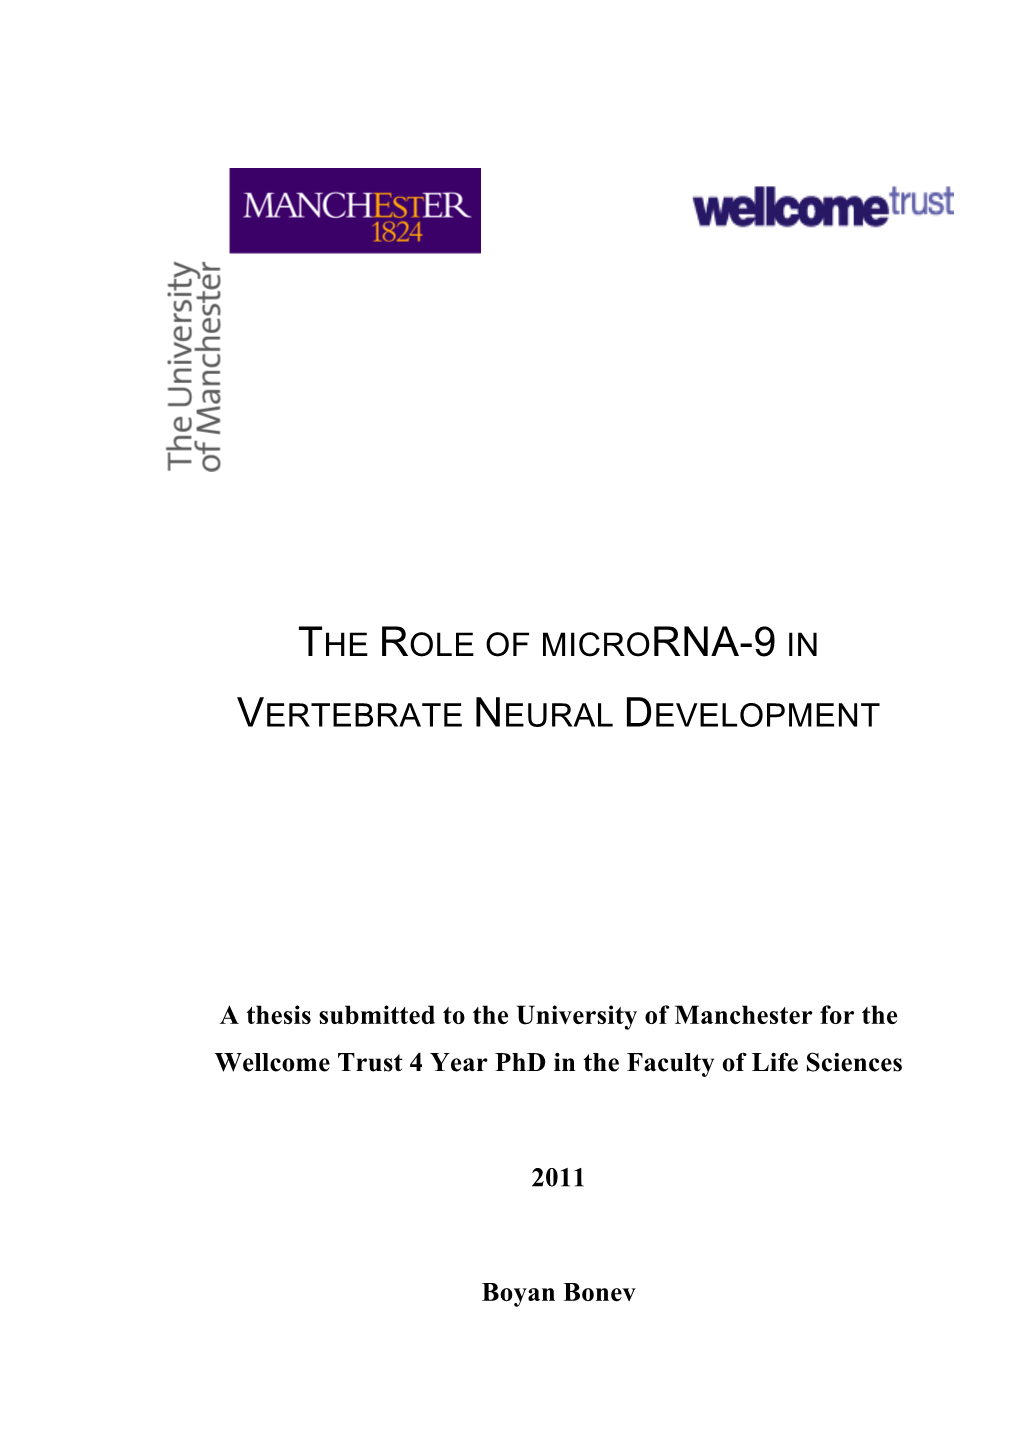 The Role of Microrna-9 in Vertebrate Neural Development Date: 27-09-2011